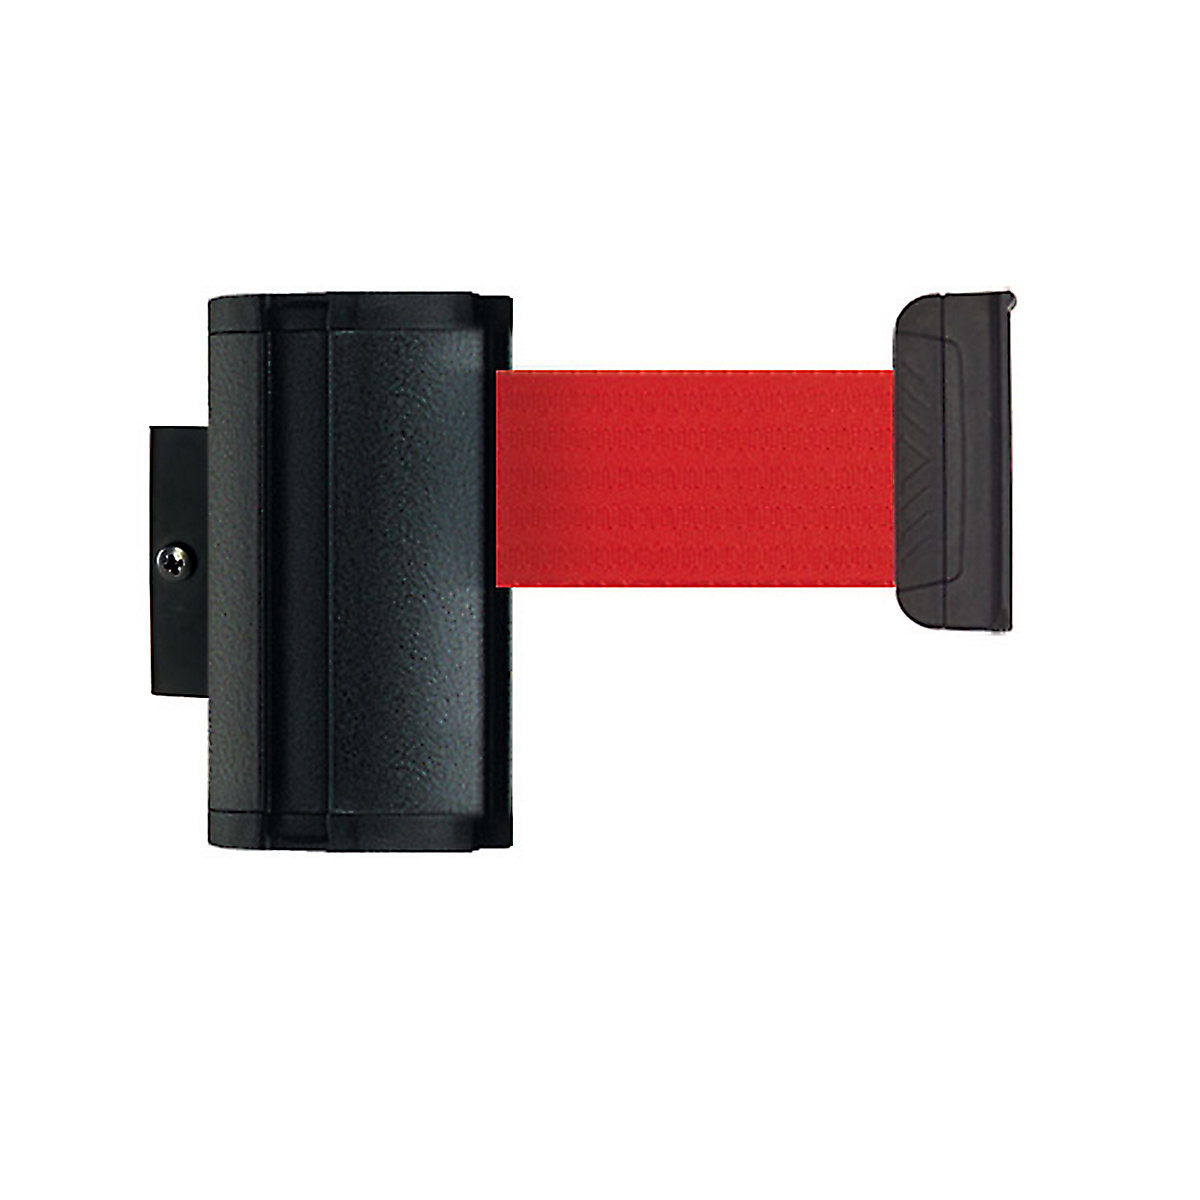 Cassetta per nastro Wall Mount, estrazione nastro max 3700 mm, nastro rosso-6